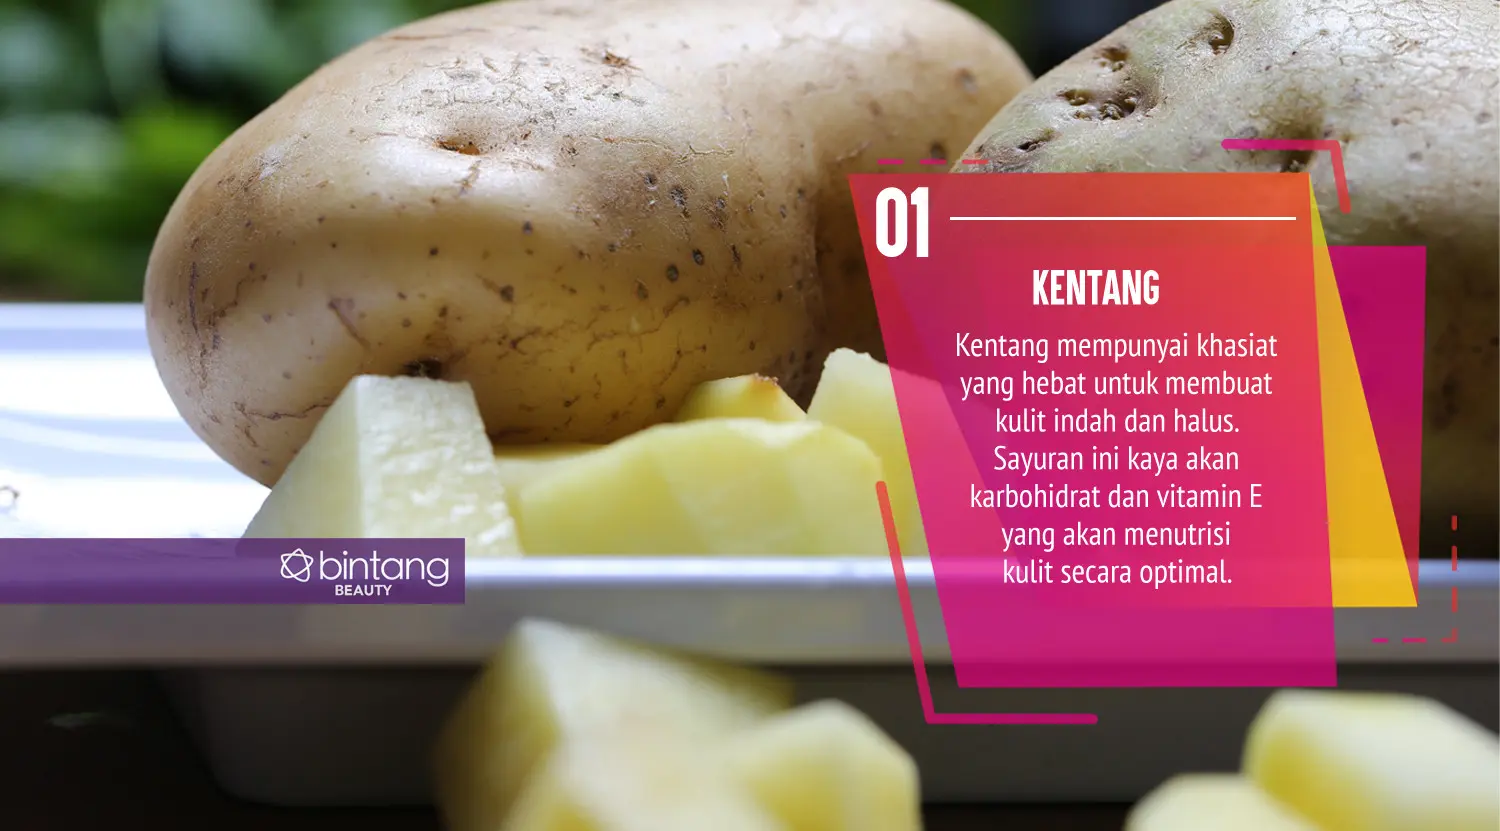 Miliki kulit glowing dengan mengkonsumsi sayuran. (Sumber foto: Adrian Putra/Bintang.com, Digital Imaging: Nurman Abdul Hakim/Bintang.com).